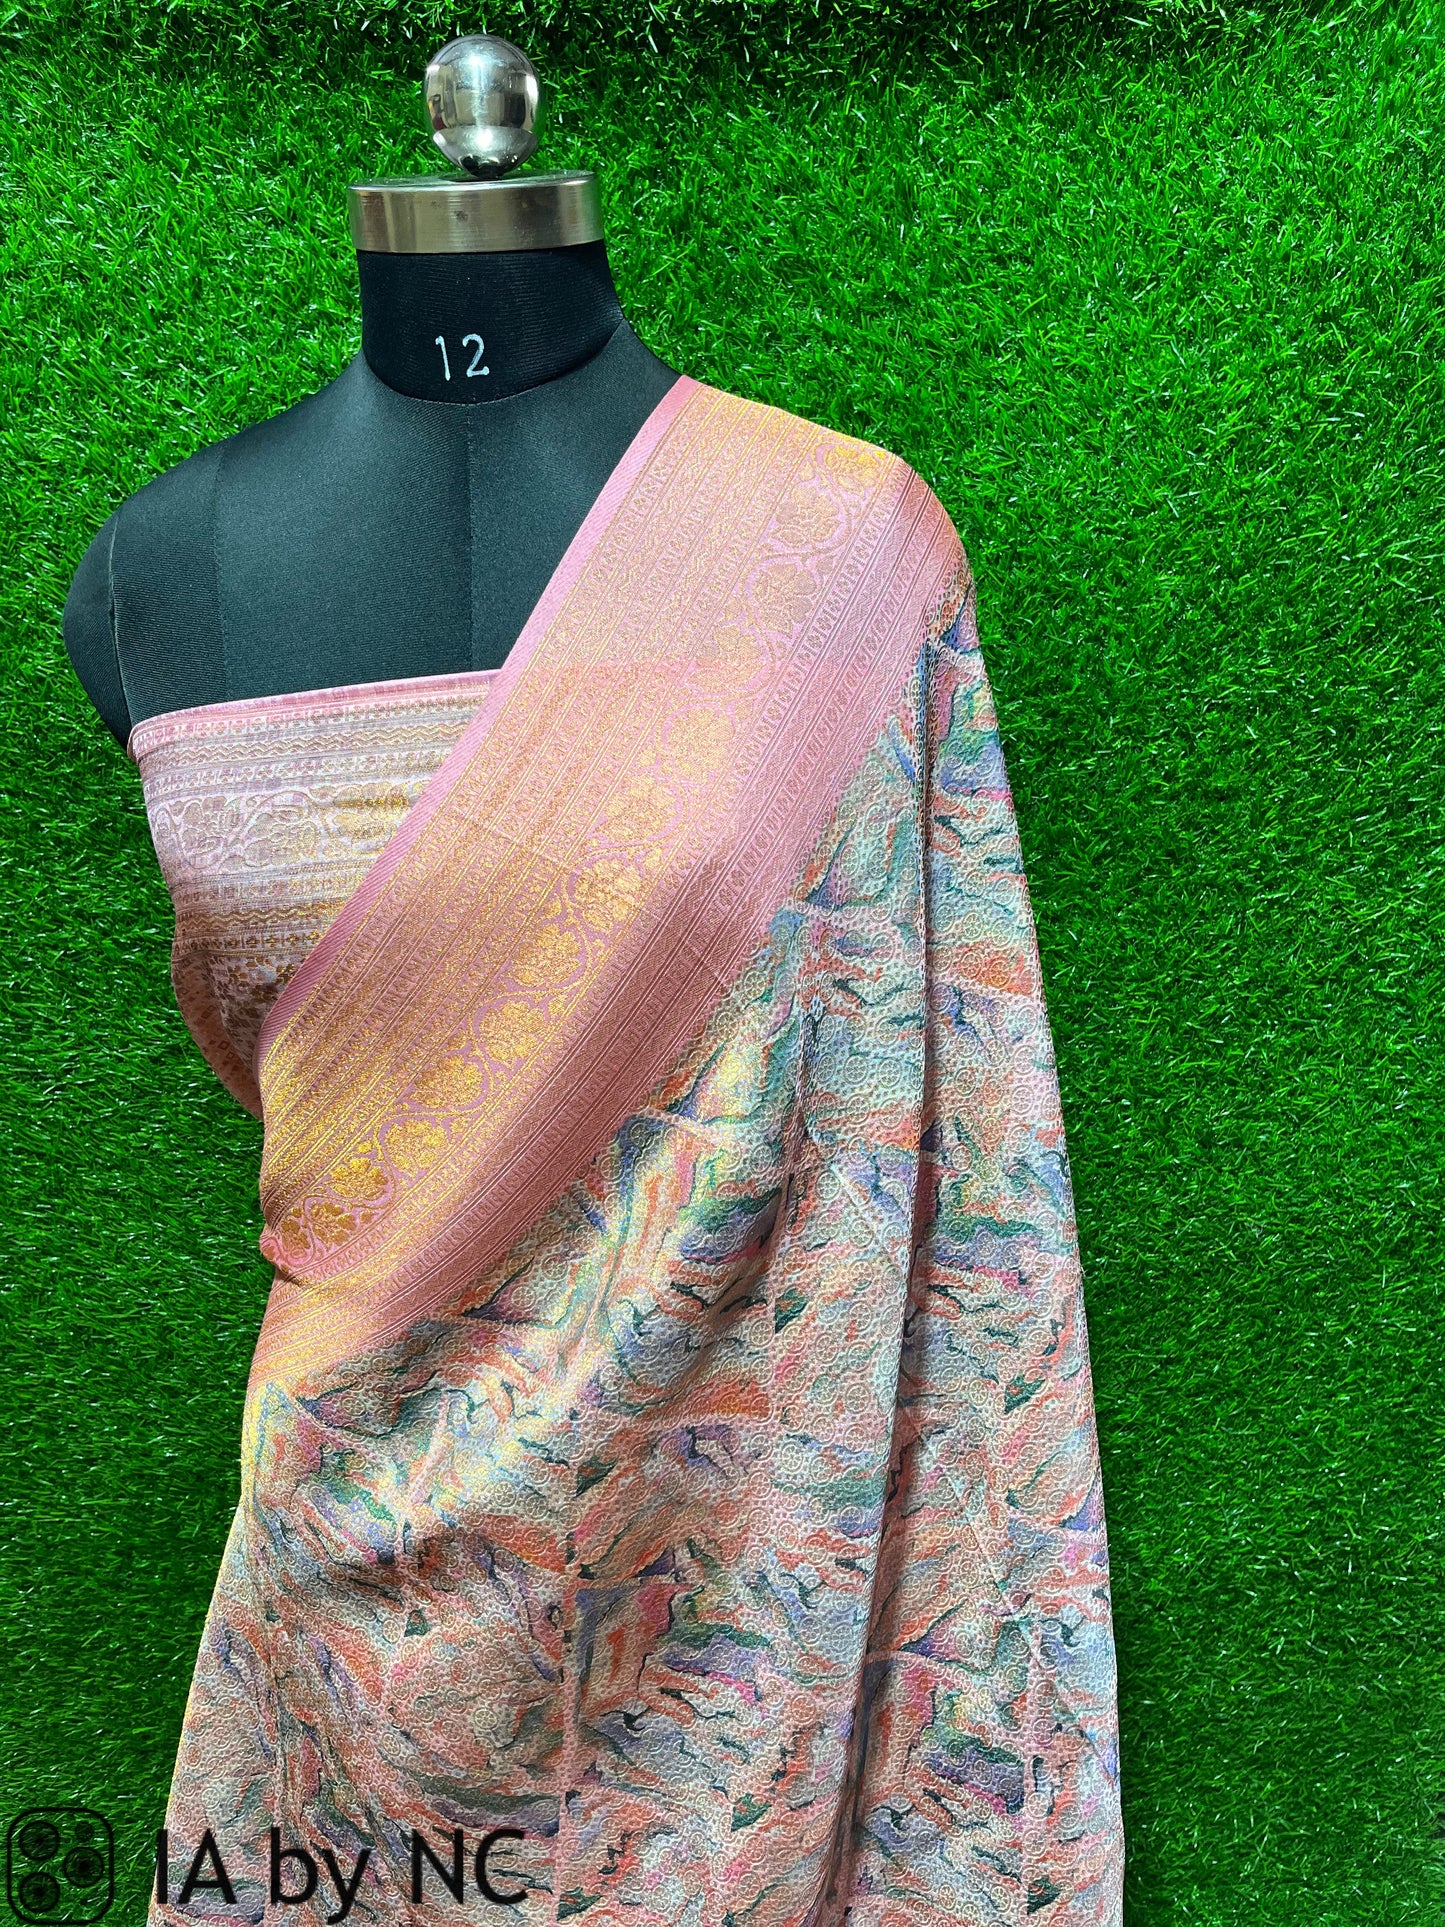 Banarasi Brocade Silk Saree